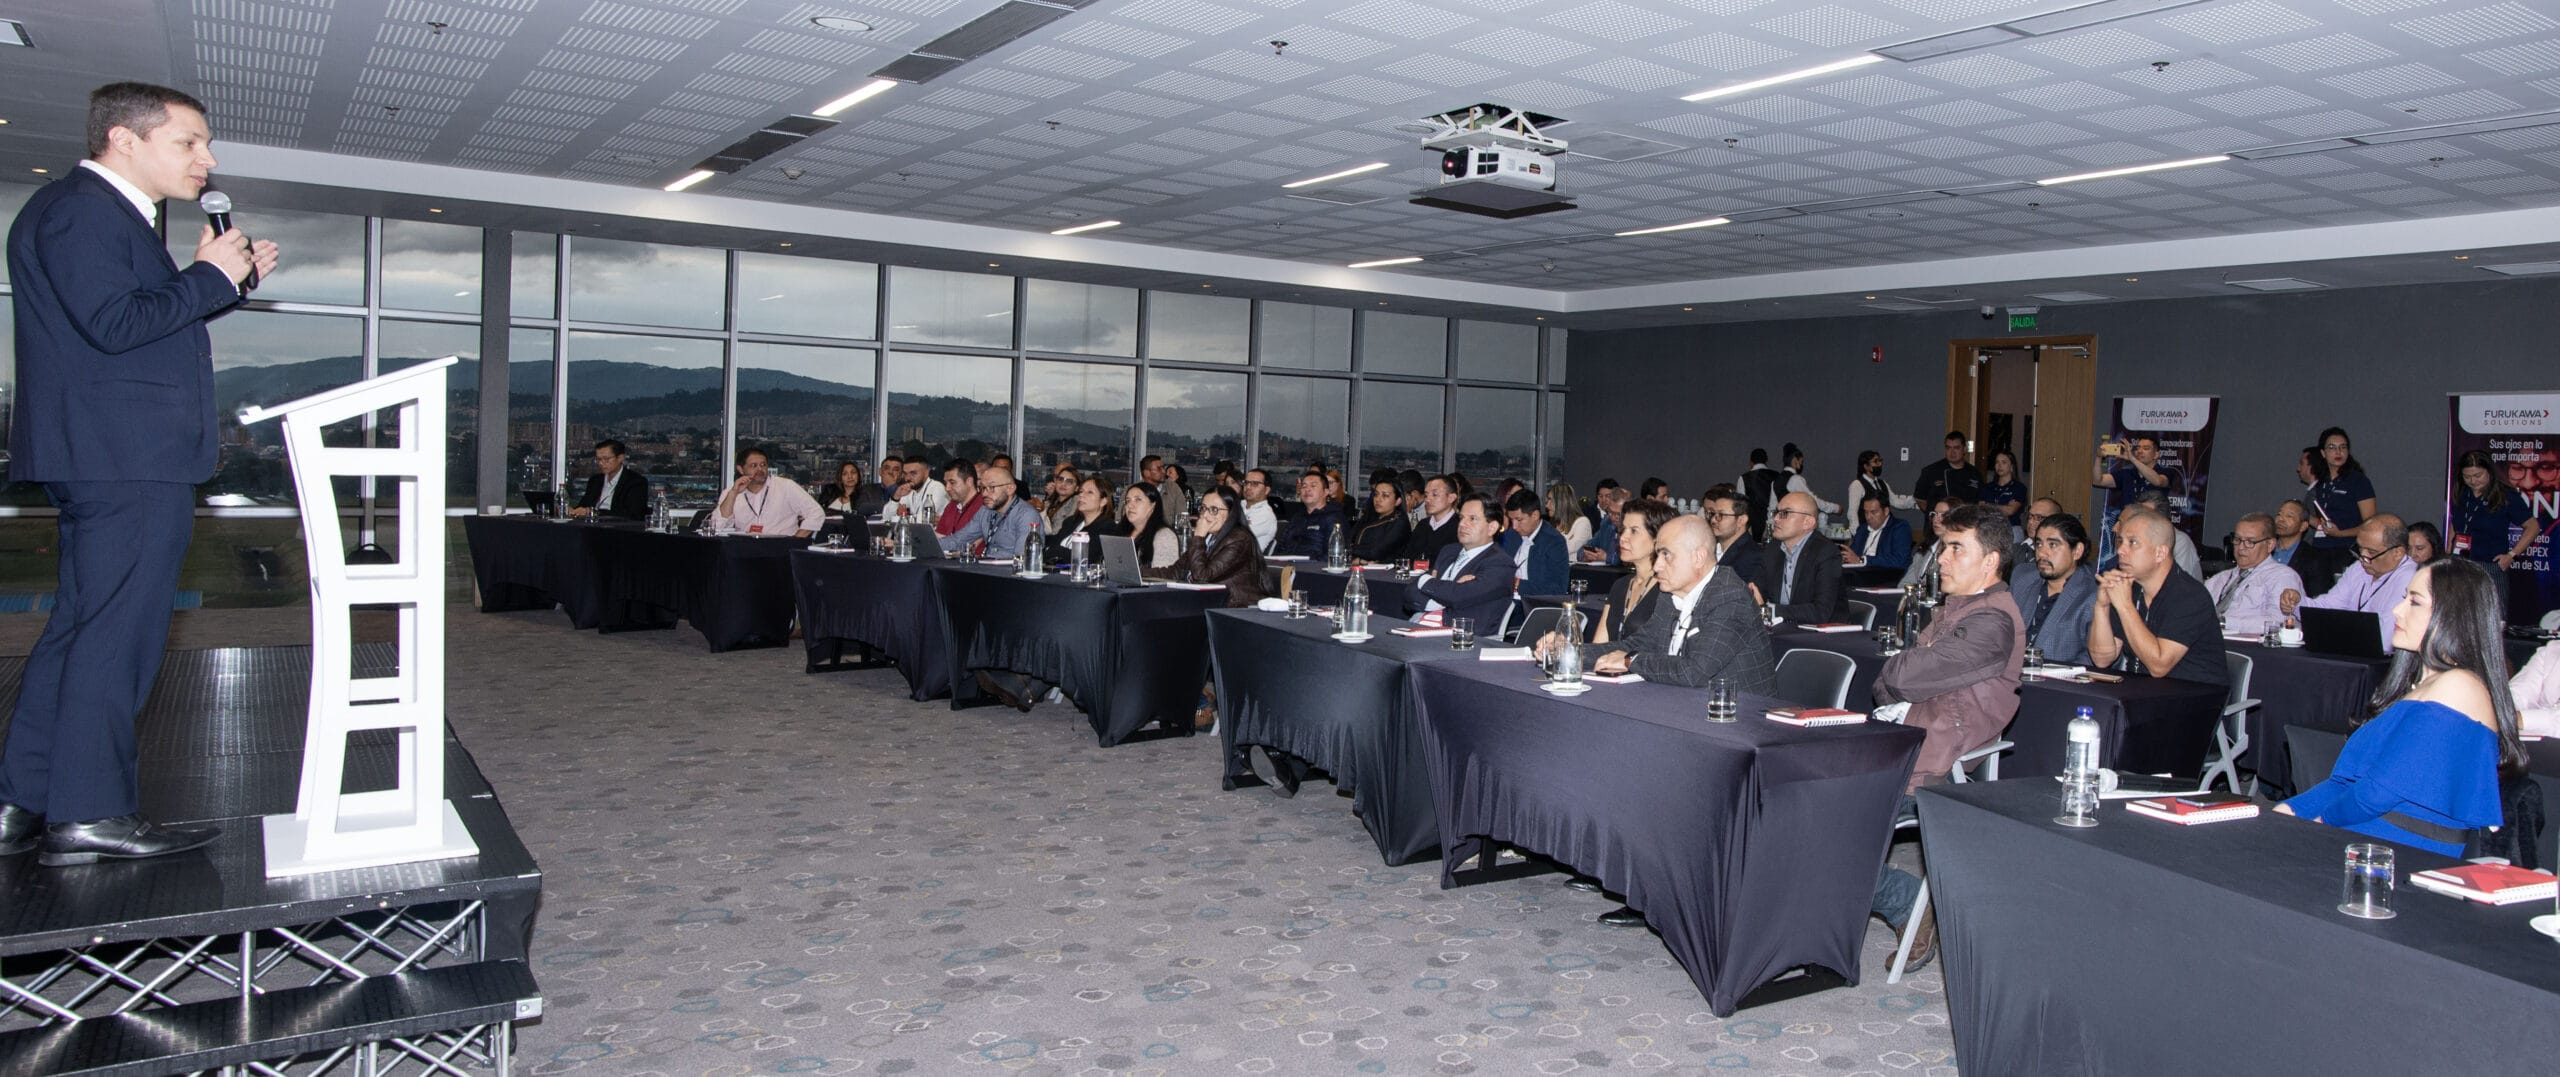 “Buscamos potenciar el mercado de infraestructura de conectividad en Colombia de la mano de nuestros partners”: Furukawa